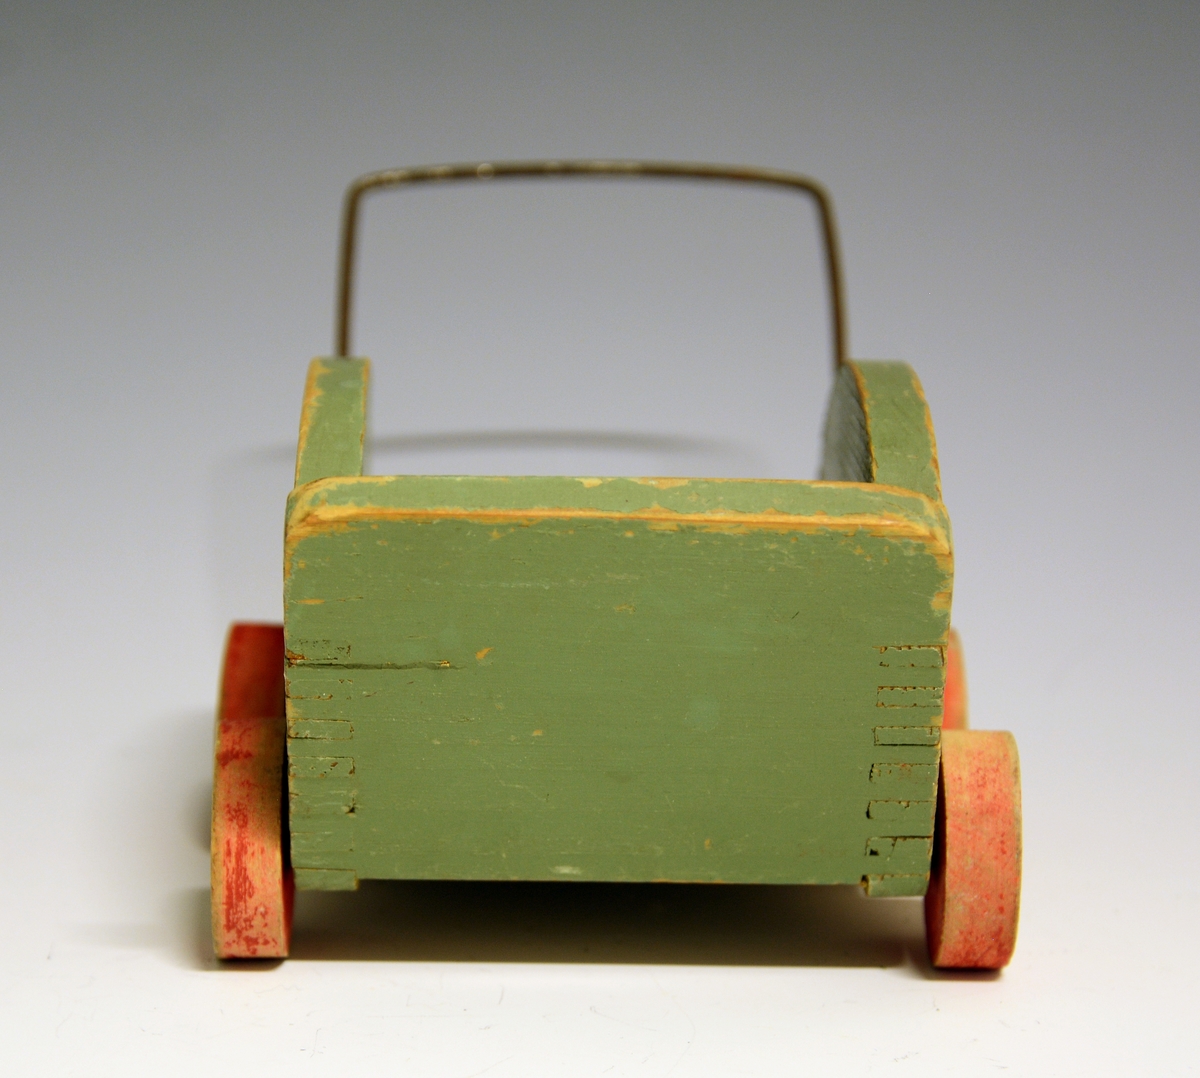 Hjemmelaget dukkevogn i tre med fire hjul og håndtak av metall. Grønnmalt, borsett fra hjulene som er røde.